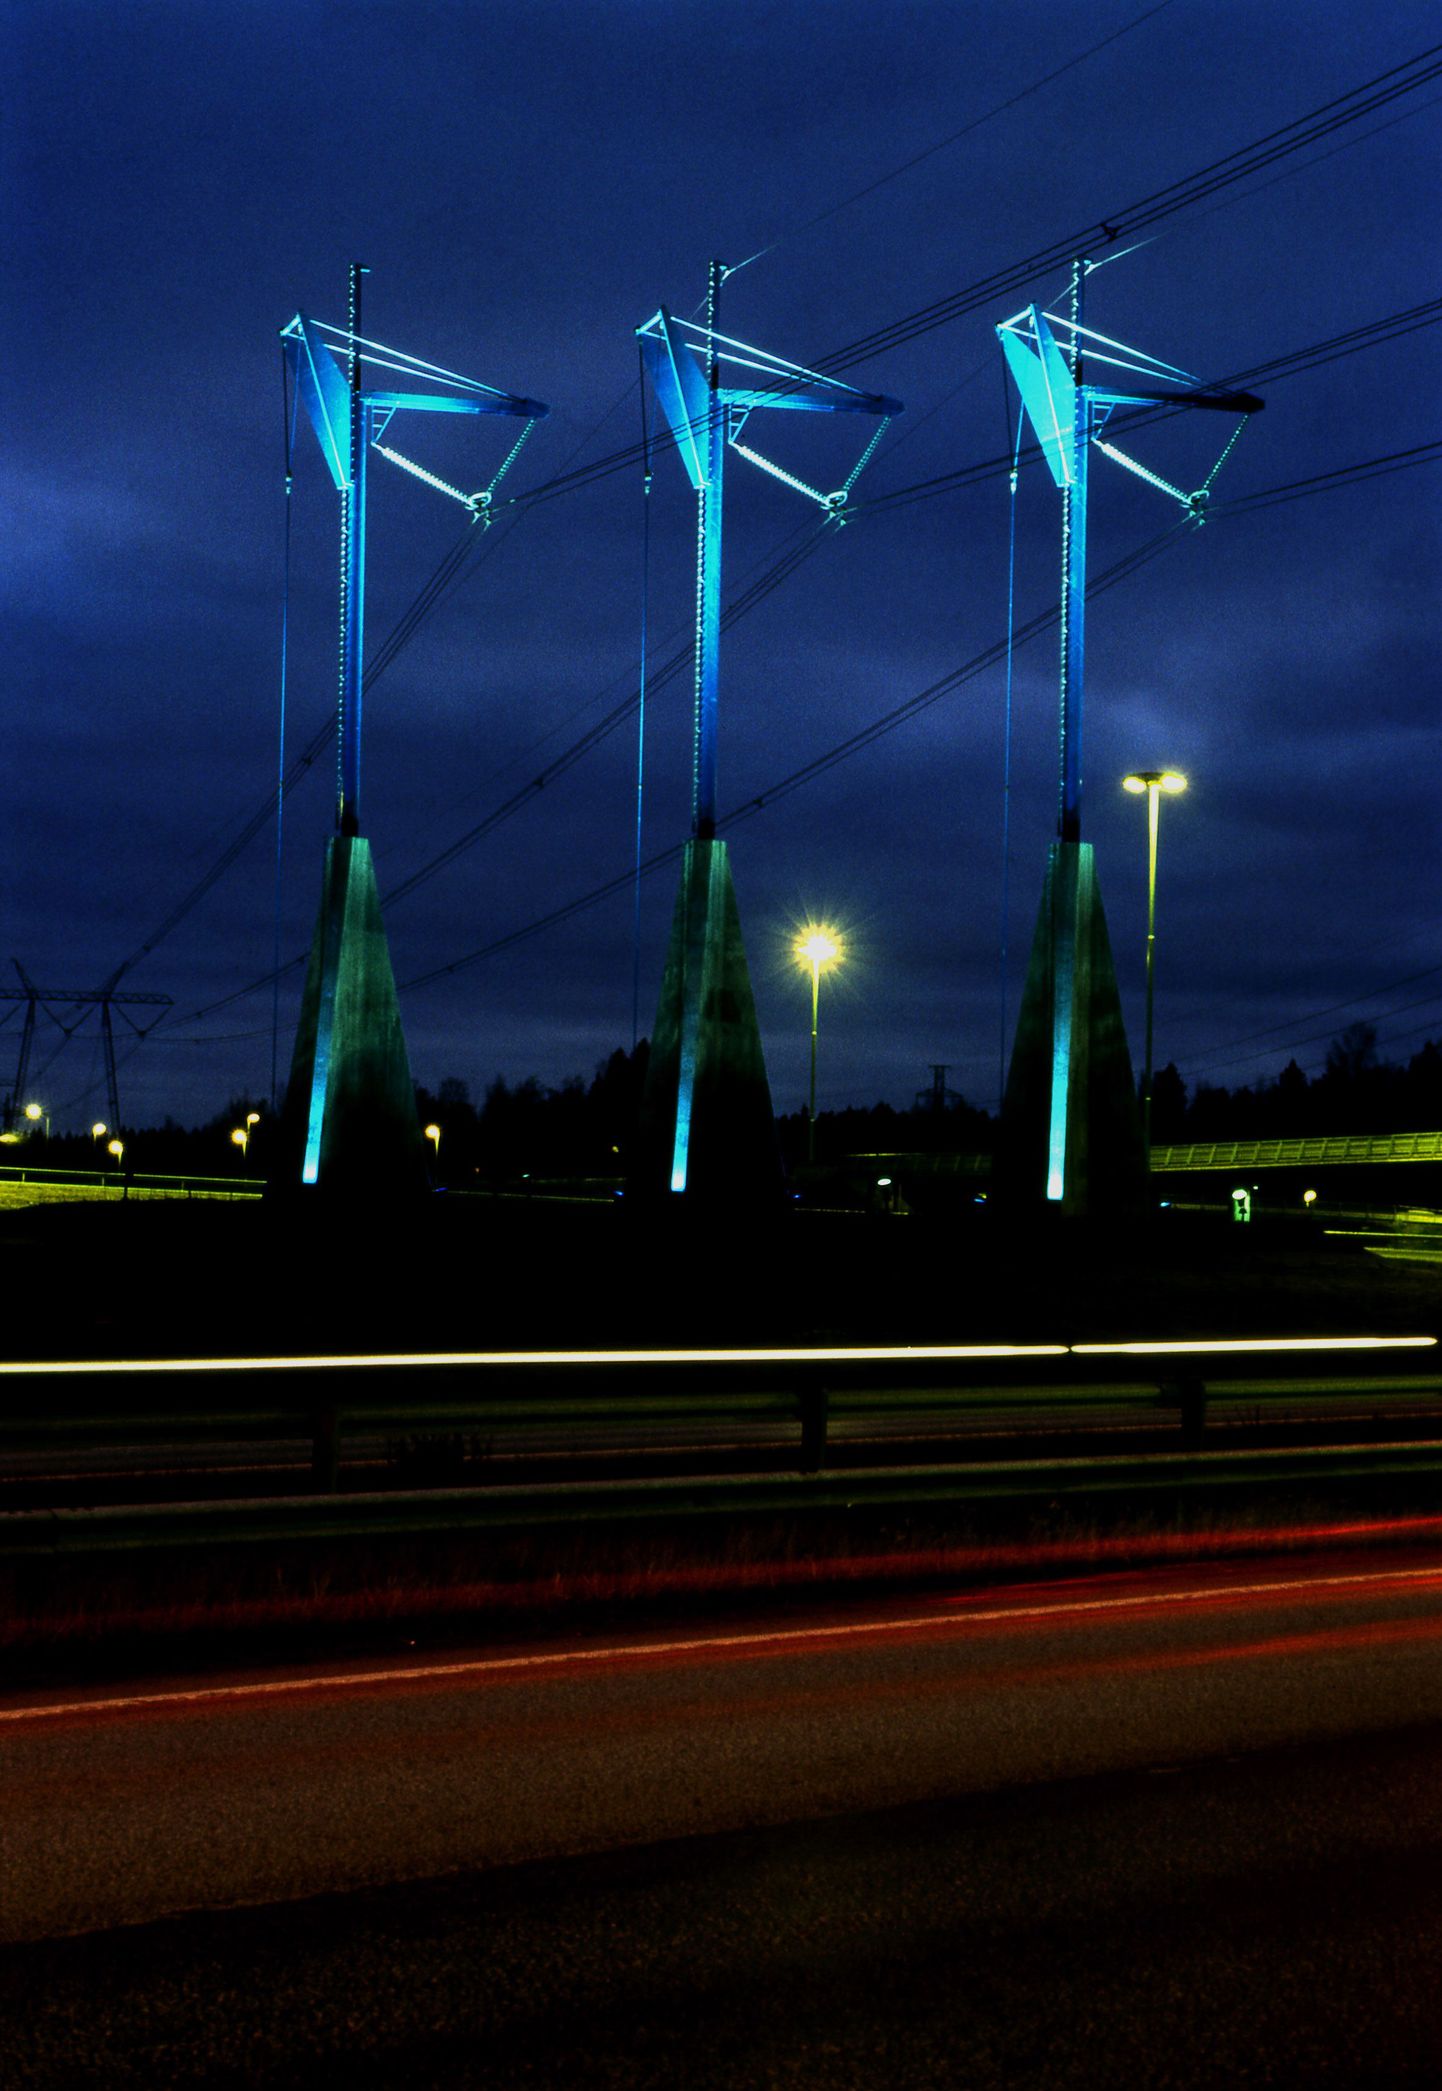 Kurgi kujutavad kõrgepingeliini disainmastid Soomes Espoo lähedal.